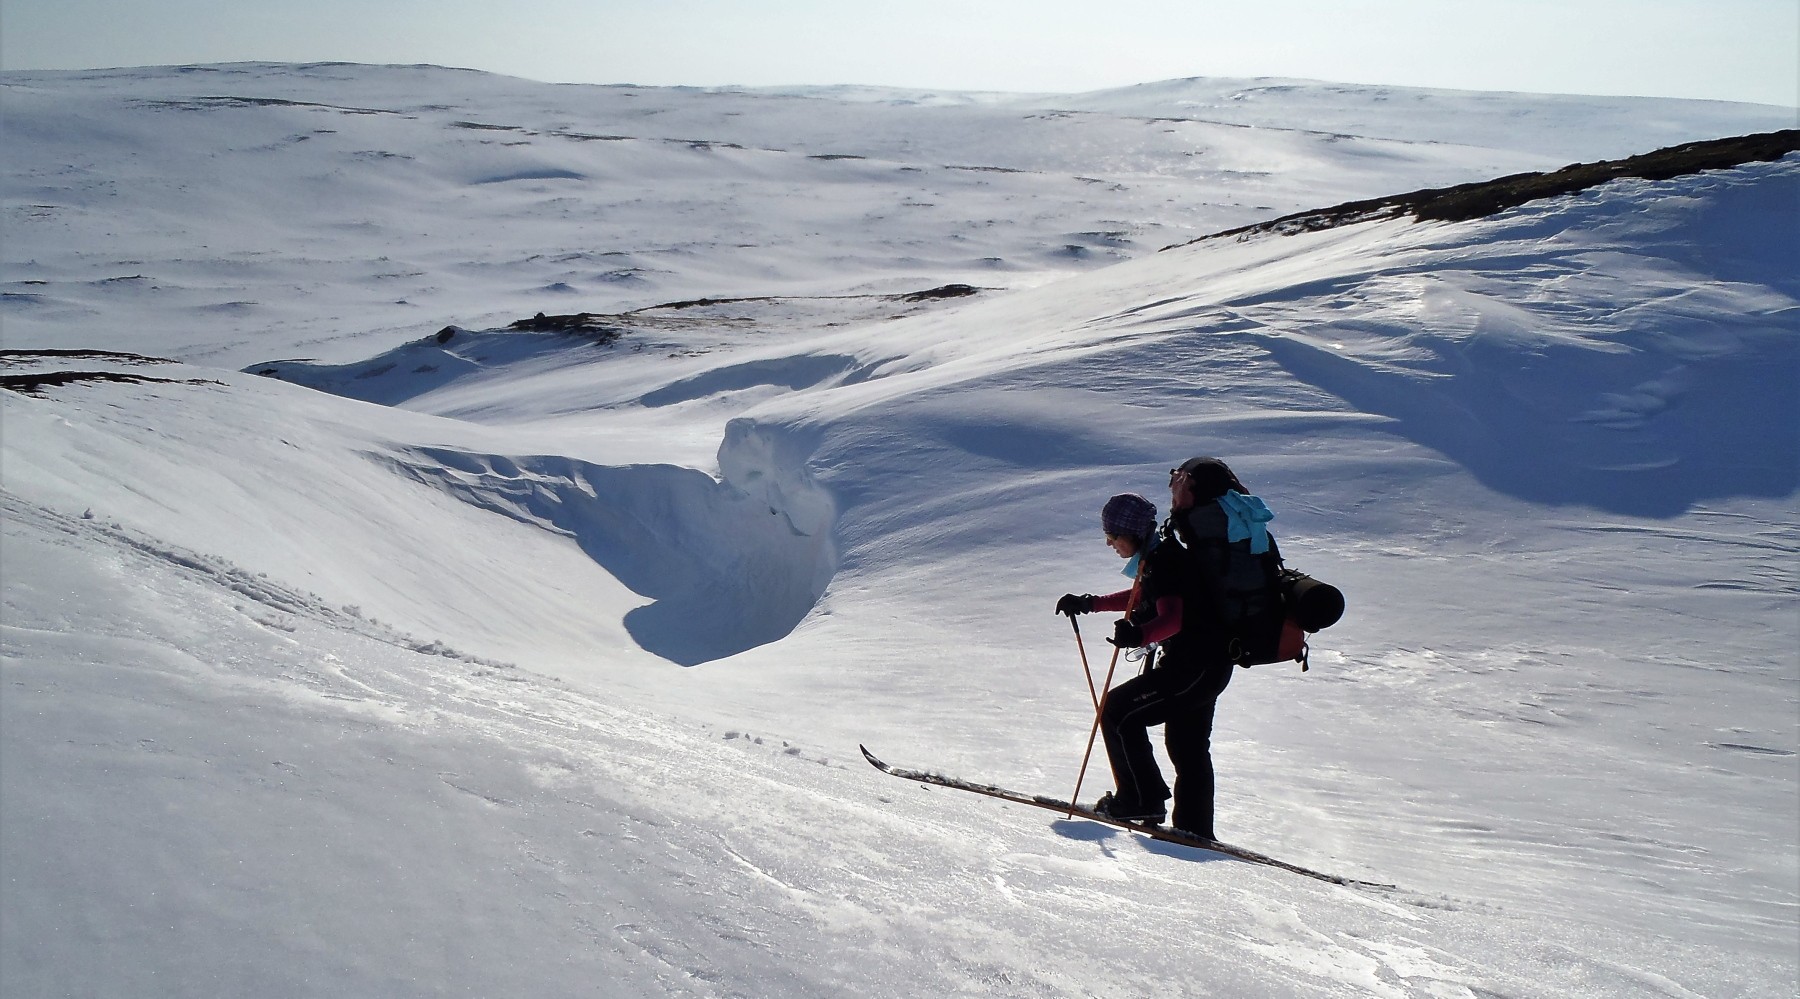 Skitour auf Backcountry-Ski / Fjellski (Bild)